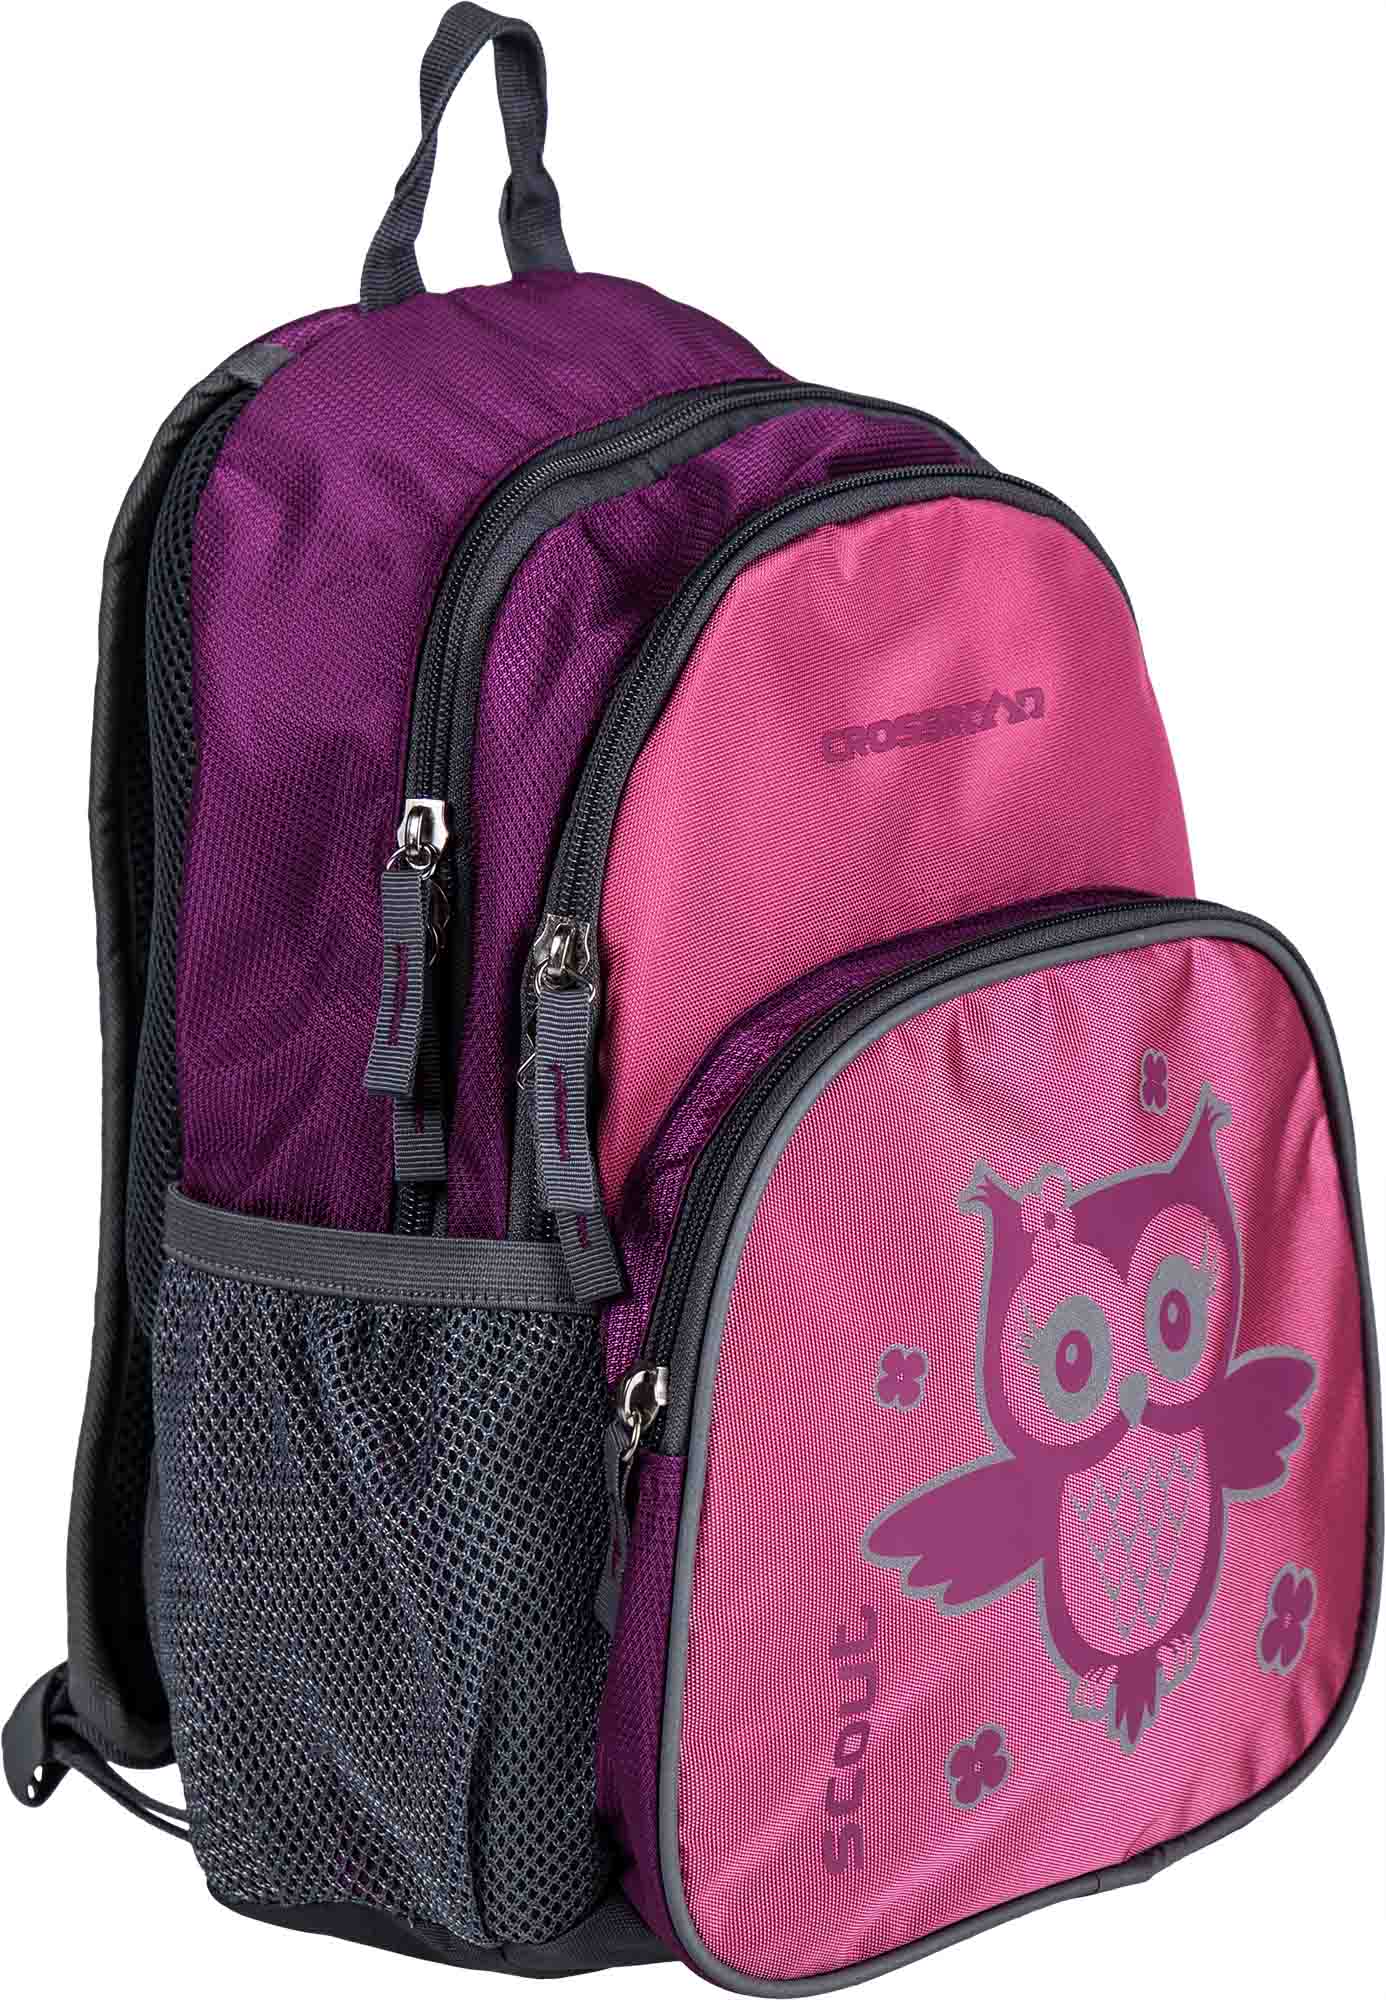 Universal children’s backpack